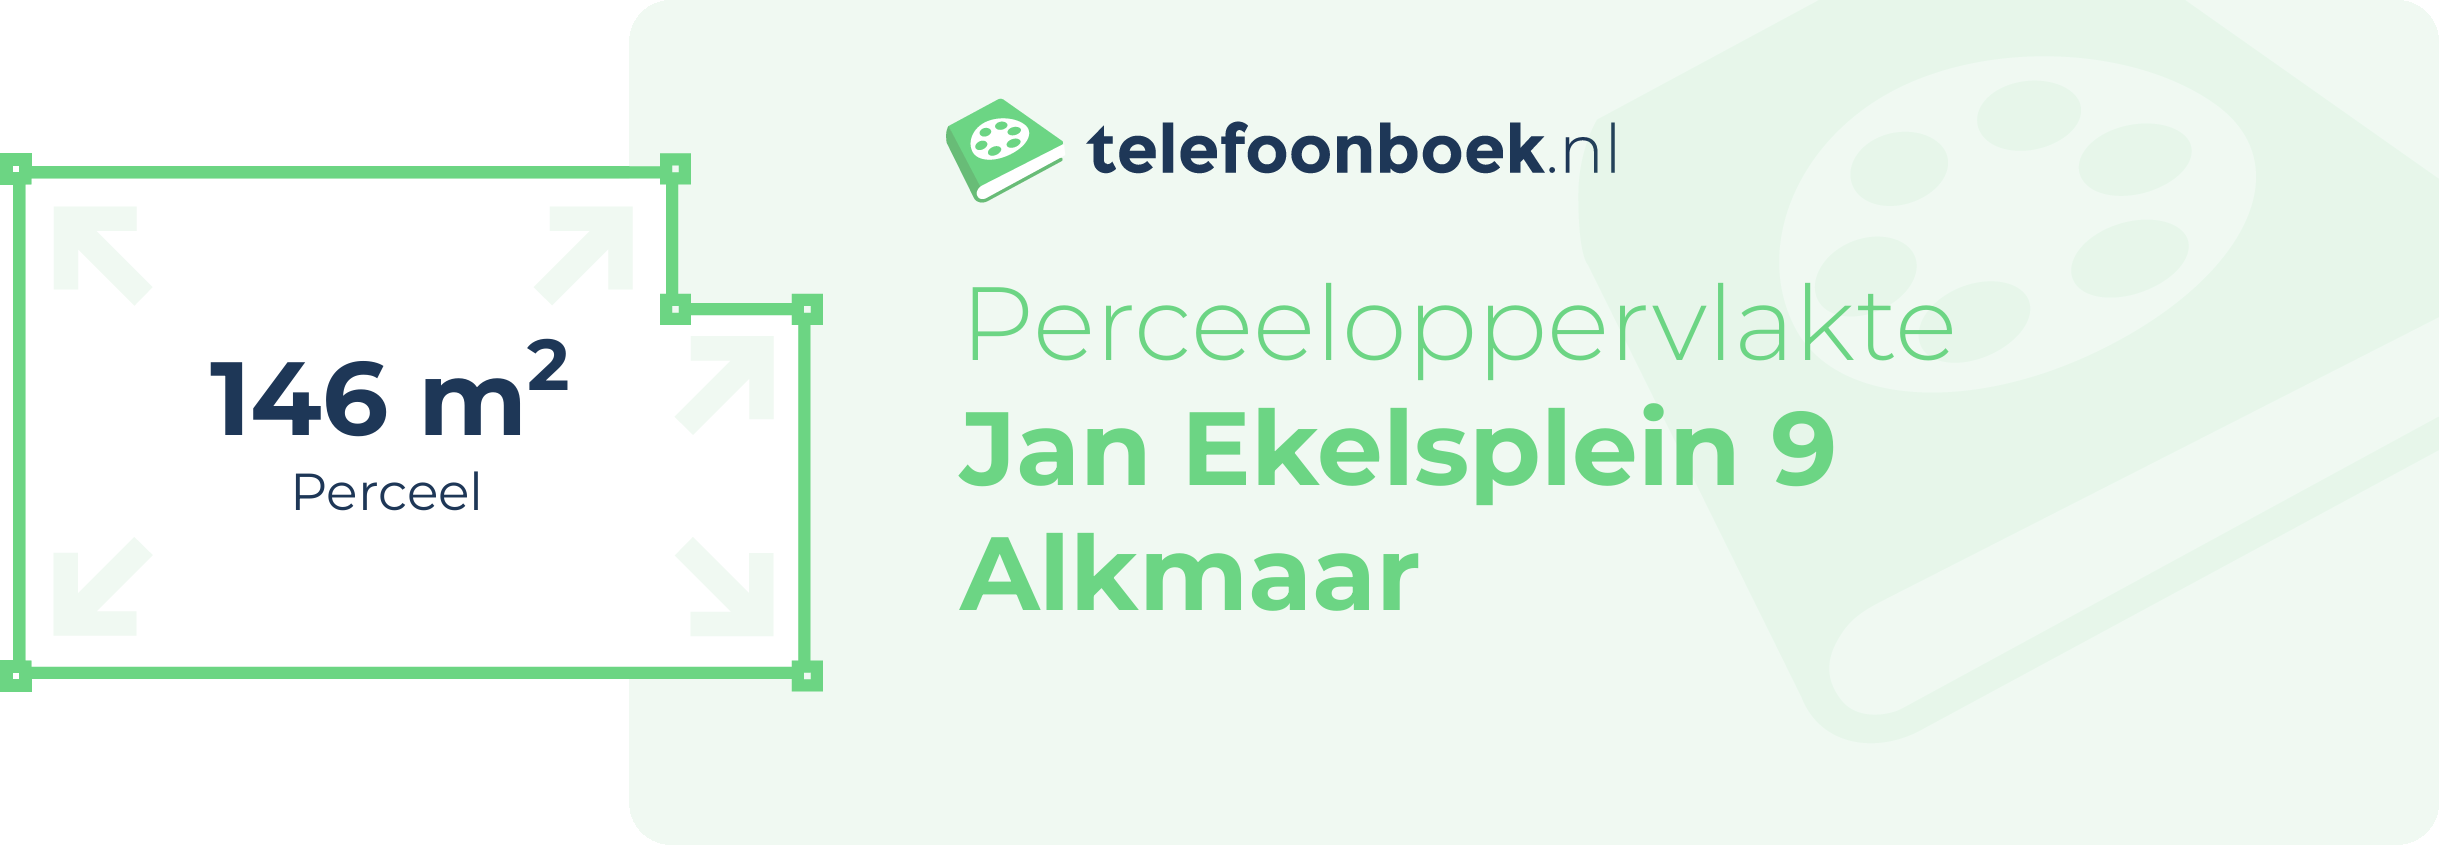 Perceeloppervlakte Jan Ekelsplein 9 Alkmaar